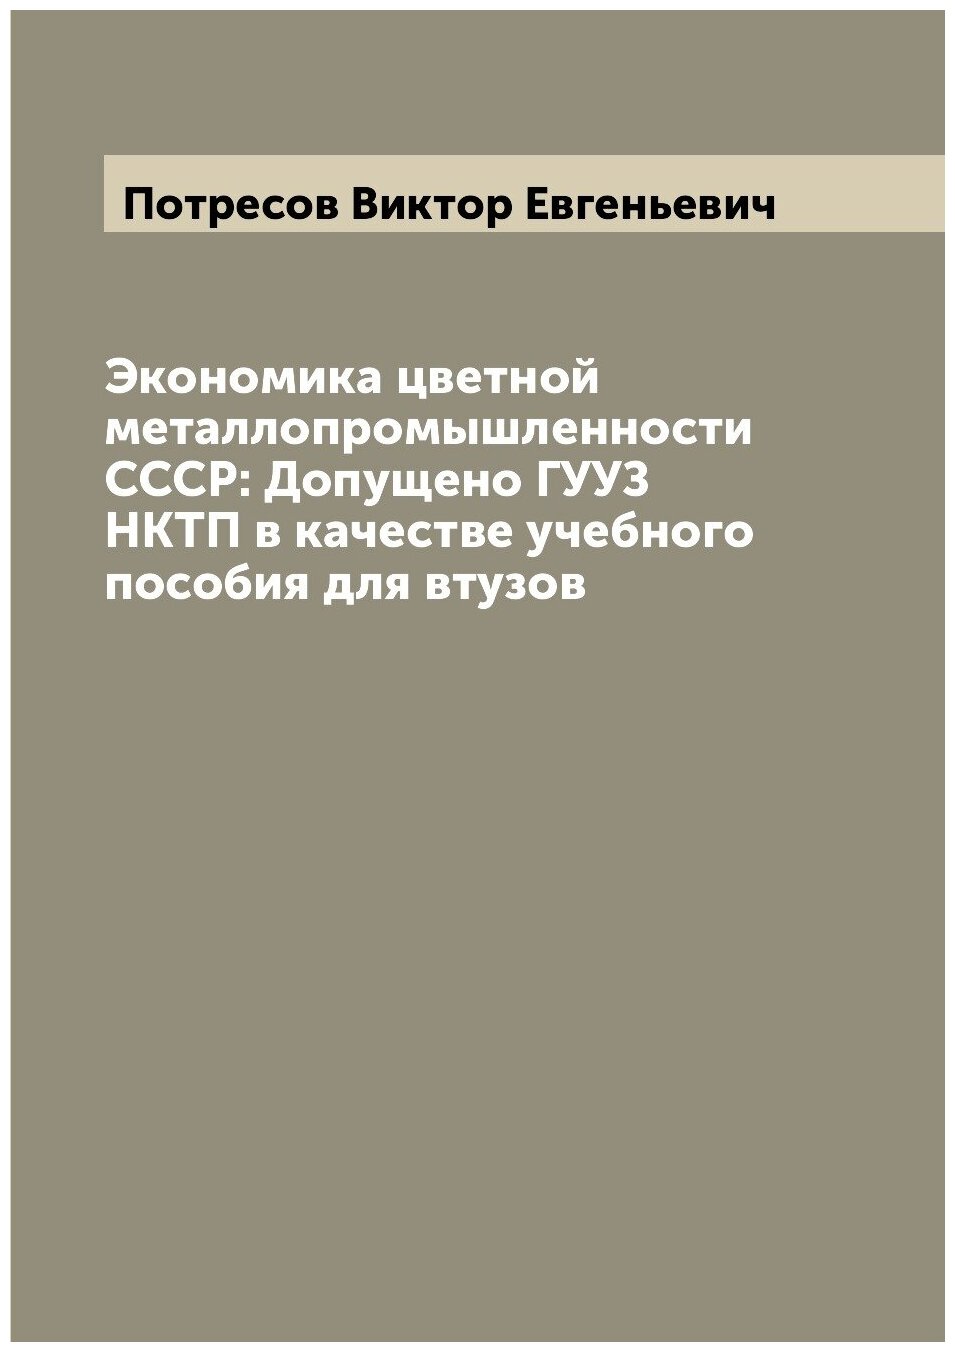 Экономика цветной металлопромышленности СССР: Допущено гууз нктп в качестве учебного пособия для втузов